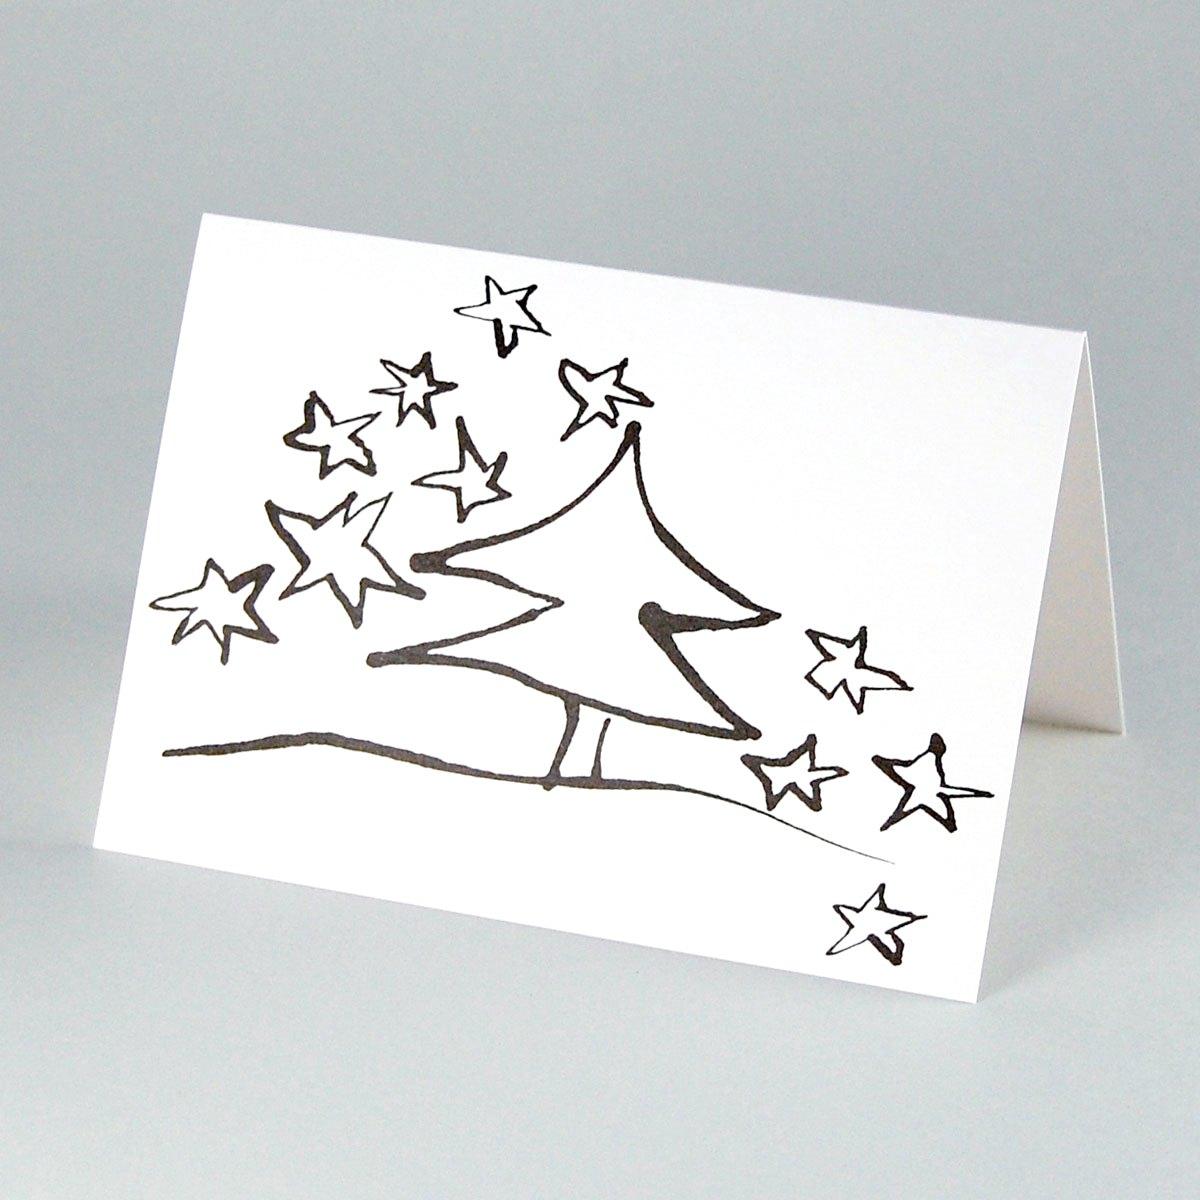 10 Weihnachtskarten mit roten Umschlägen: Baum mit Sternen